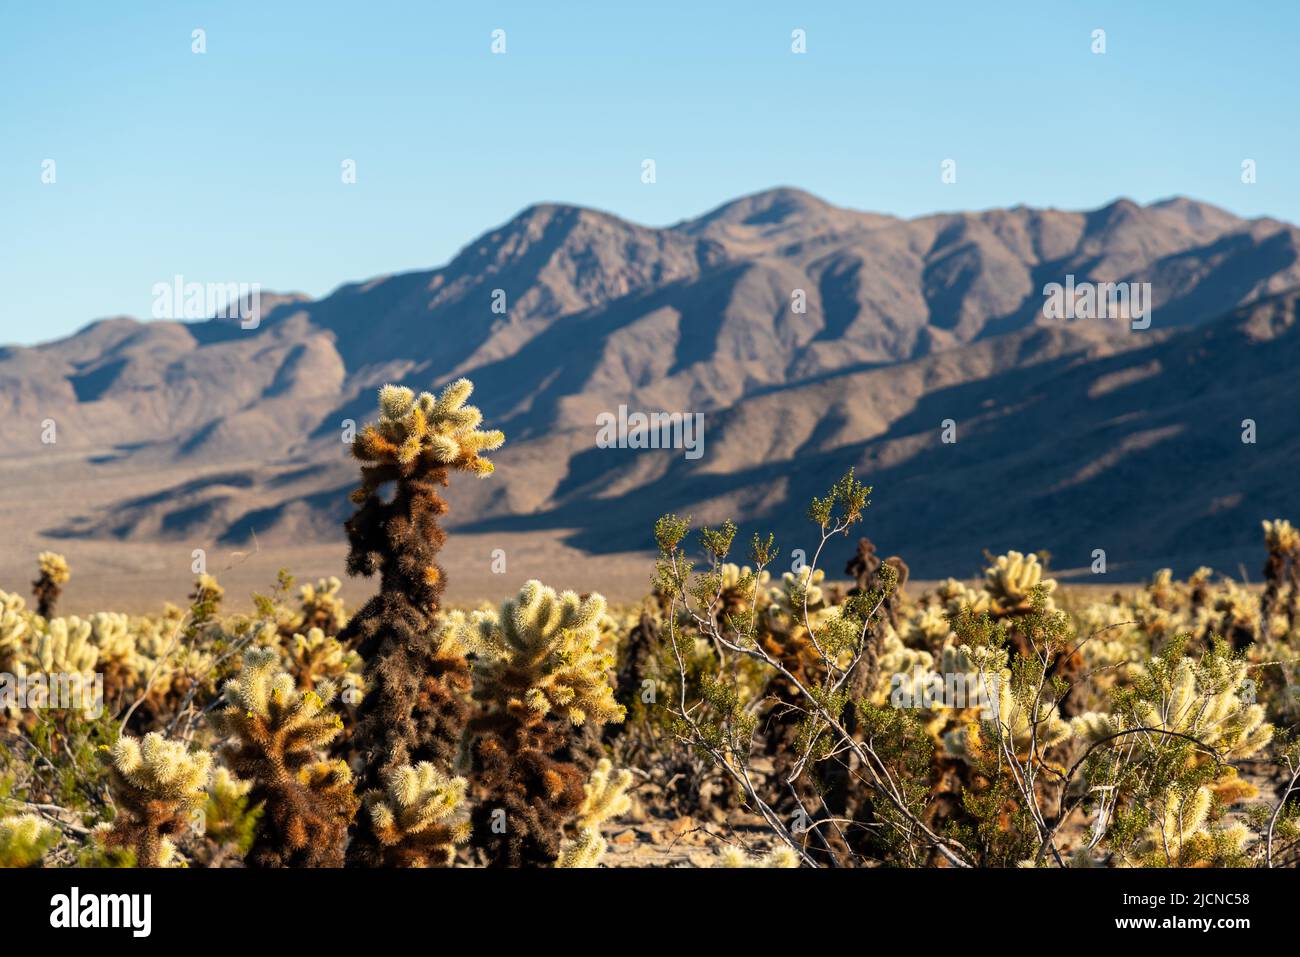 Landschaftlich reizvolle Ausblicke aus der Mojave-Wüste, Kalifornien, an einem wunderschönen Tag mit blauem Himmel und Cholla-Kaktus im Vordergrund. Stockfoto